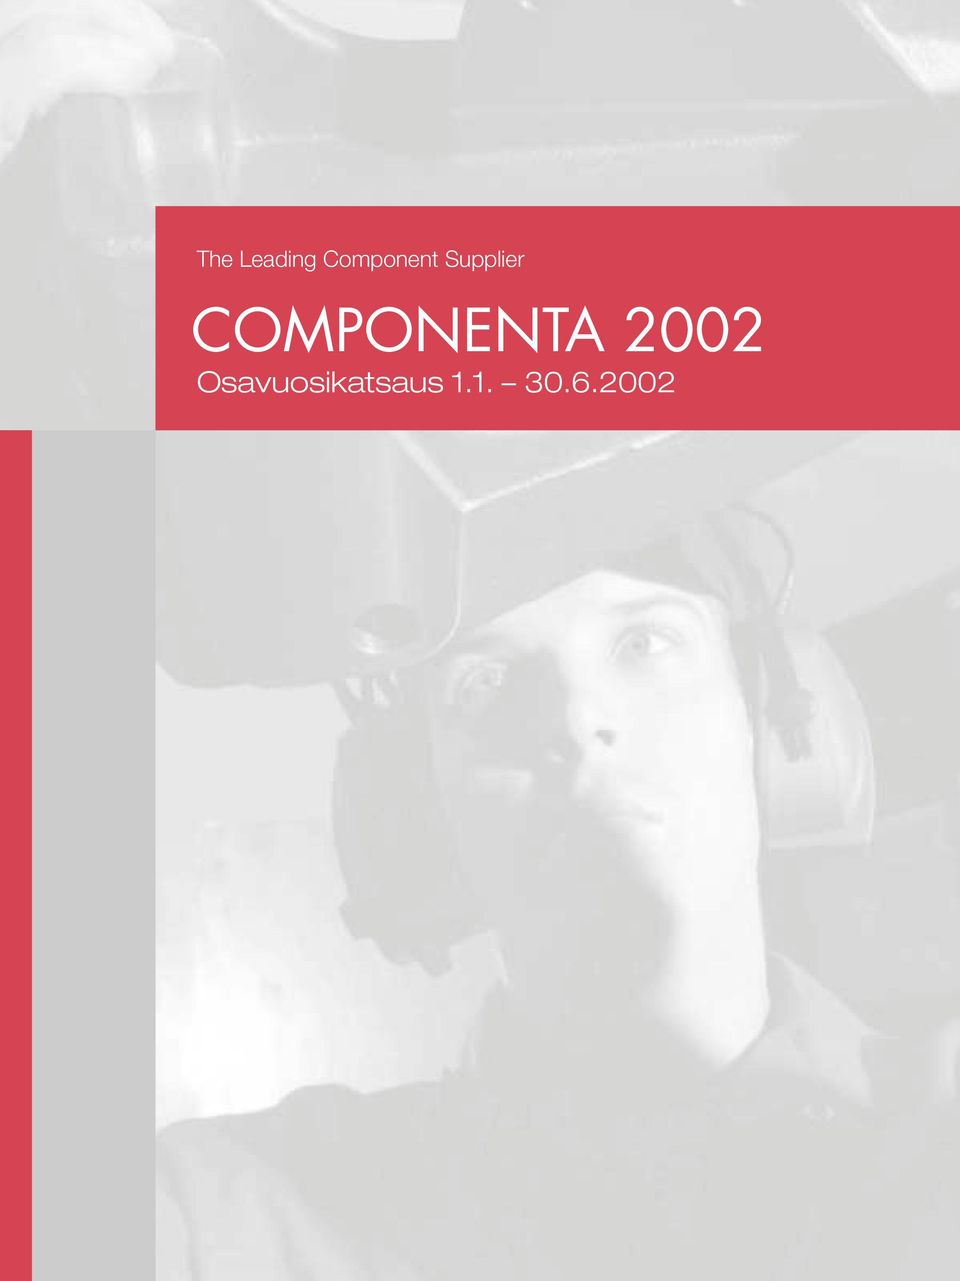 COMPONENTA 2002